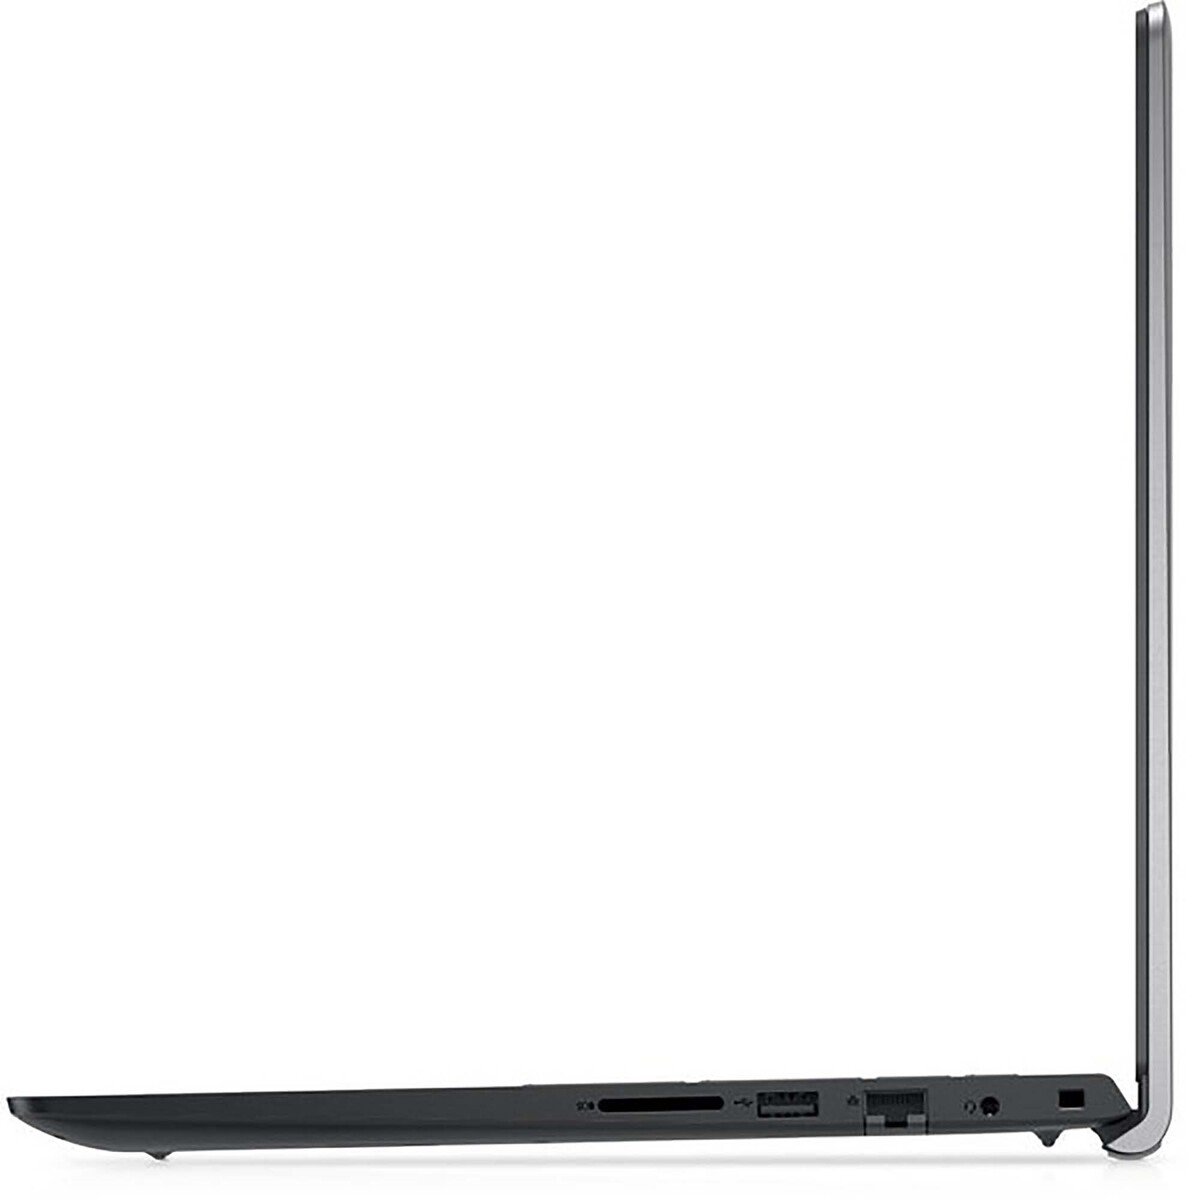 Dell Vostro Laptop-VOS15-3515-6262-GR,AMD Ryzen 3,8GB RAM,256GB SSD, 15.6" FHD, Windows 11,Grey,English-Arabic Keyboard